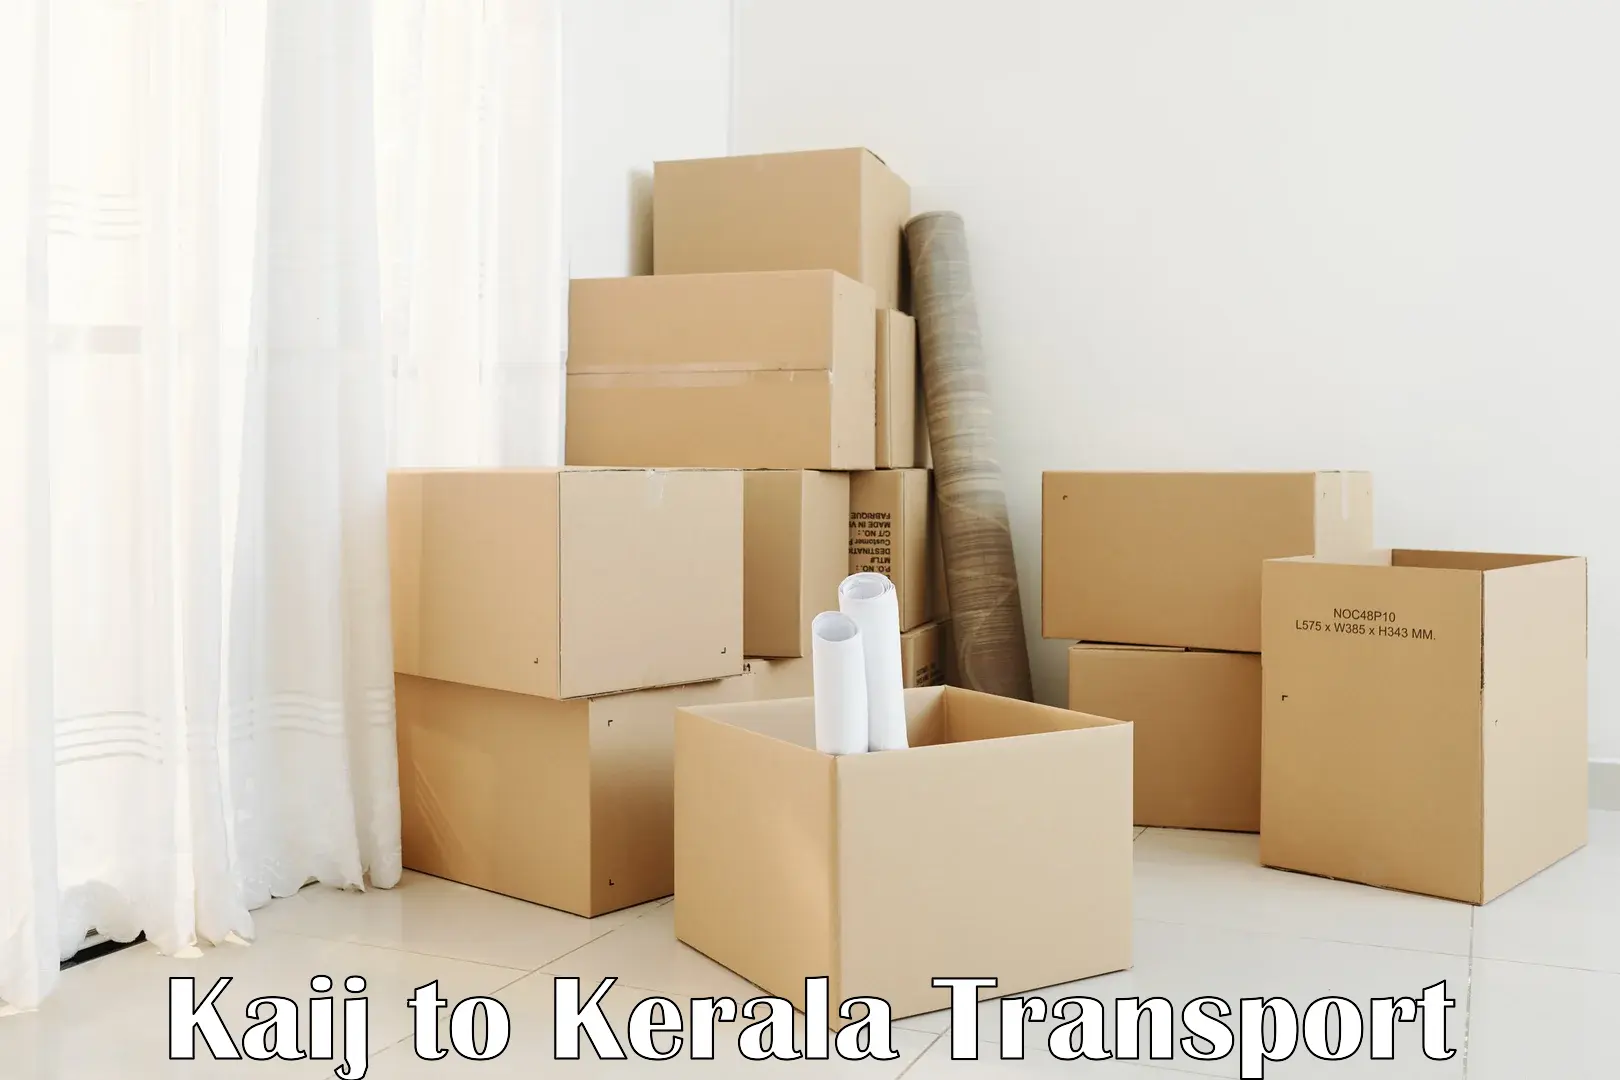 Nearest transport service Kaij to Kakkur